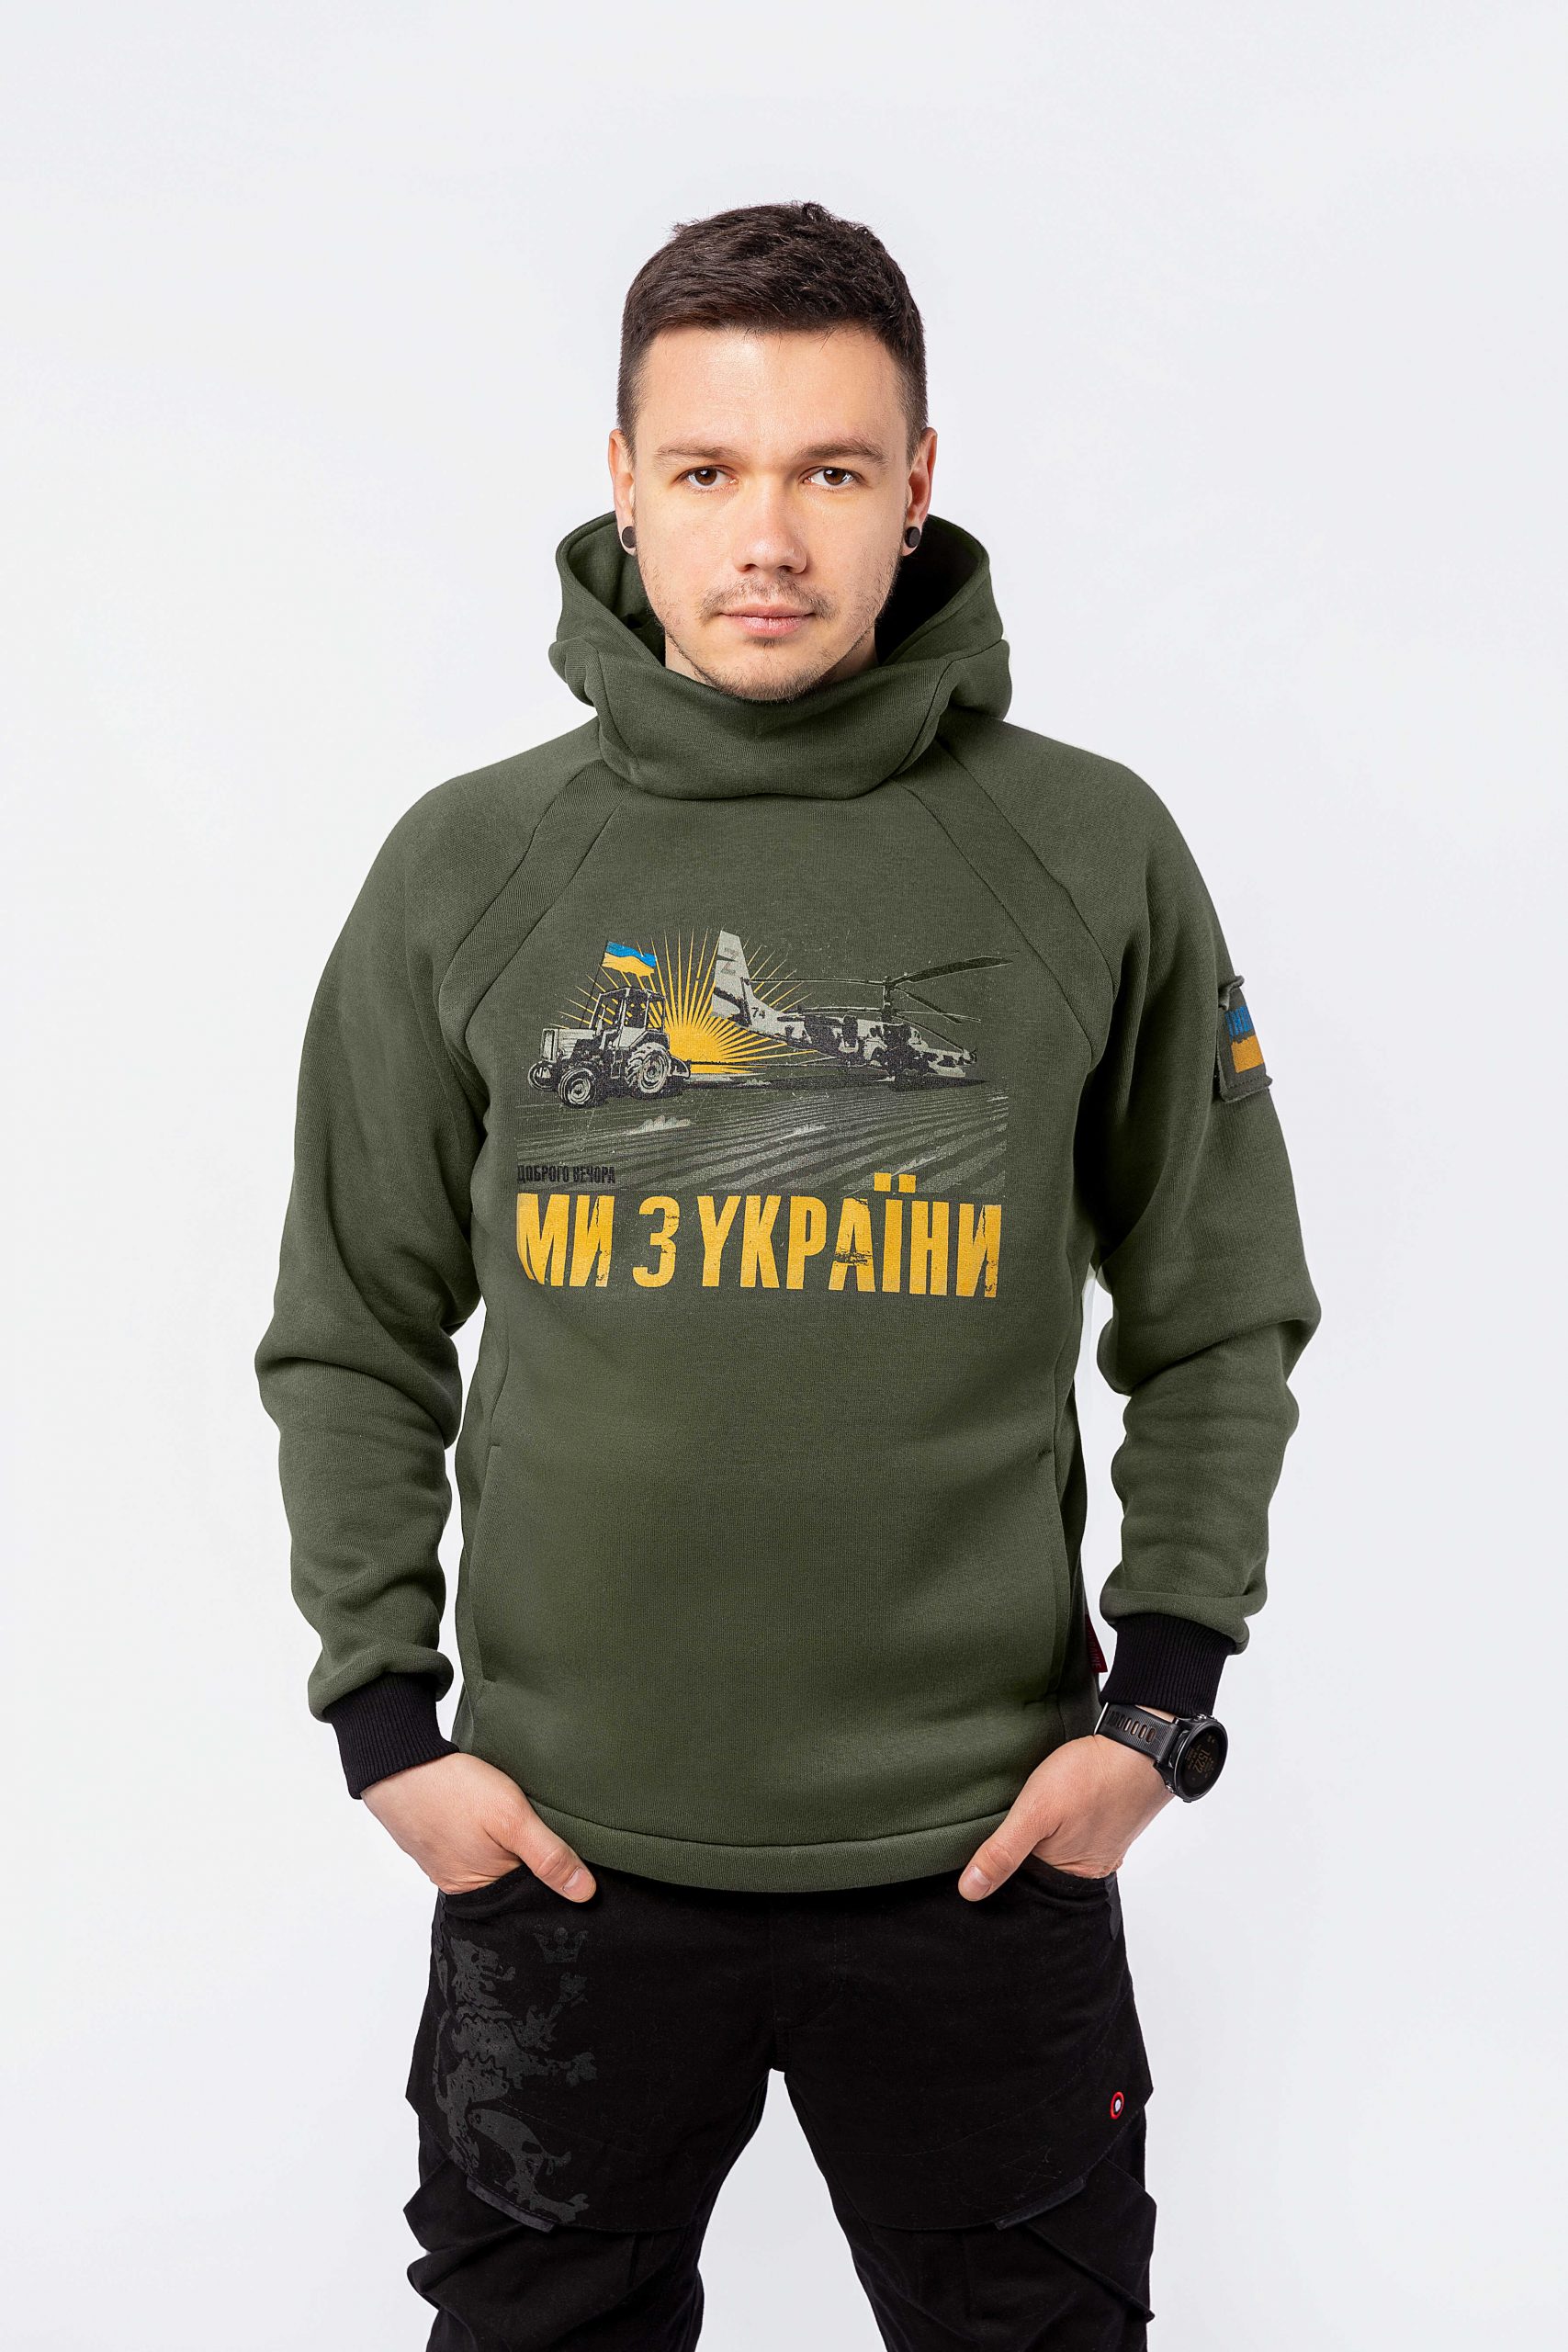 Чоловіче Худі We Are From Ukraine. Color khaki. Unisex hoodie (men’s sizes).